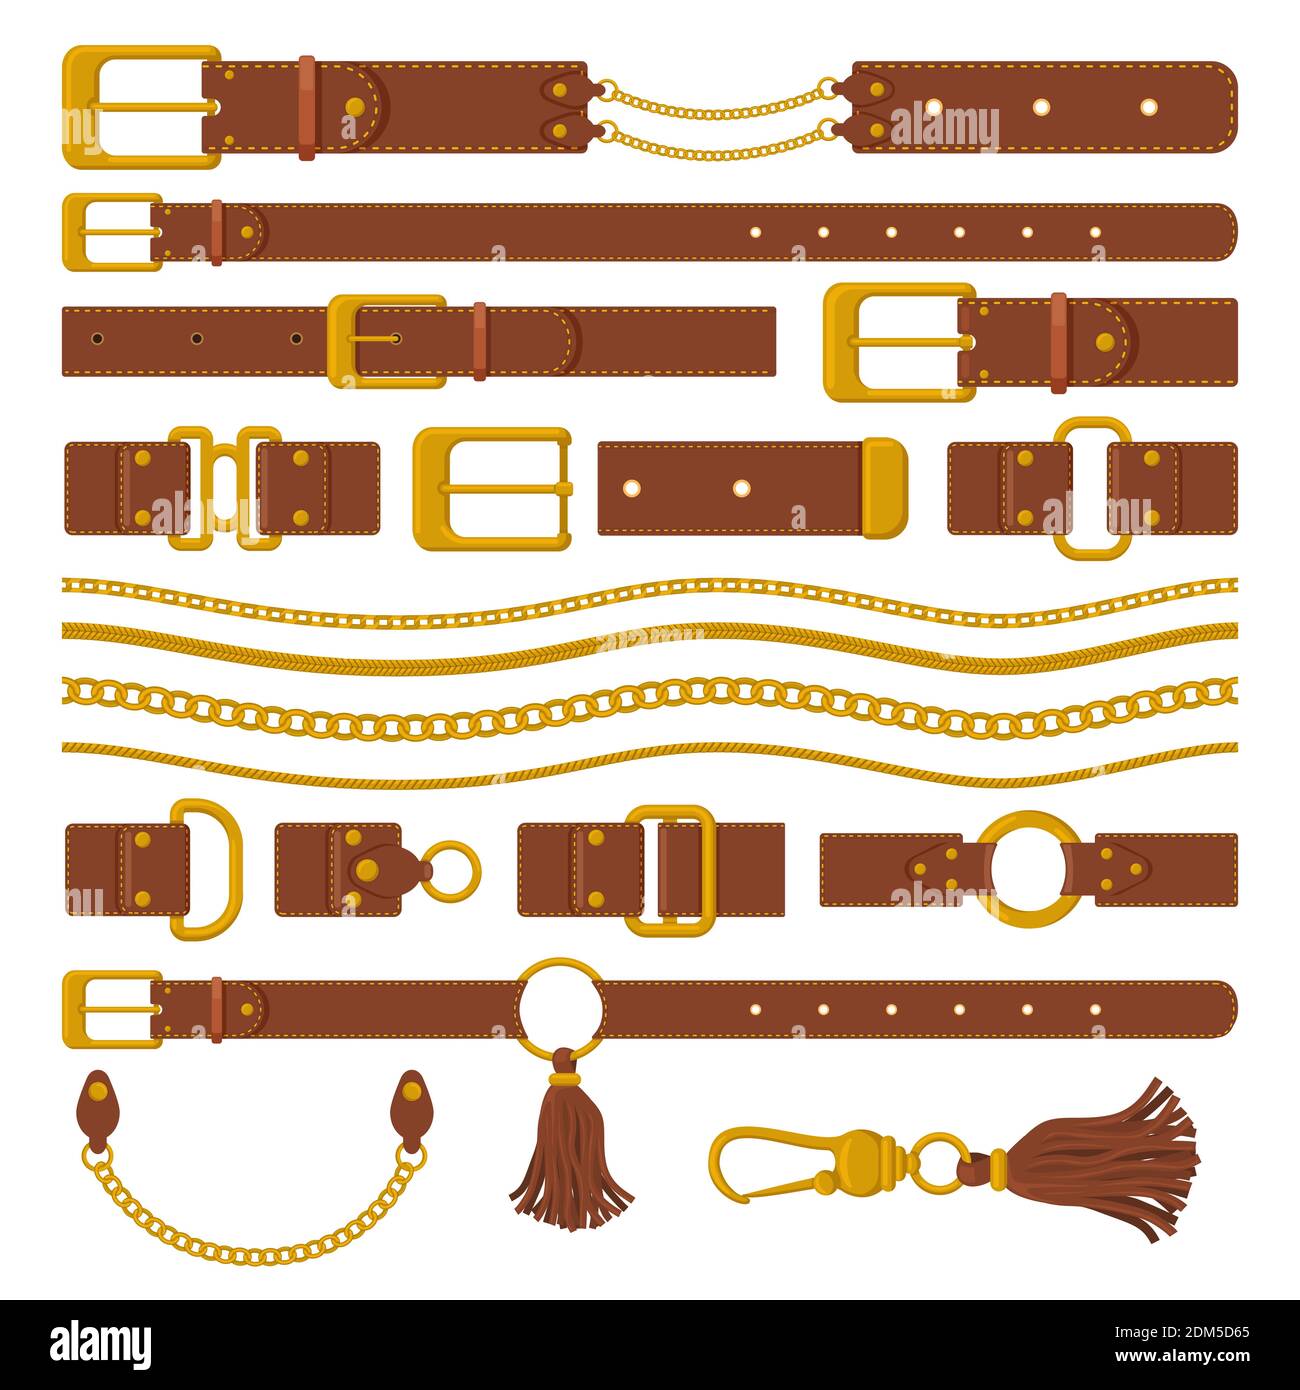 Cinghie e catene. Cinture in pelle marrone, anelli dorati, catene e fibbie metalliche. Accessori in pelle per aberdashery illustrazione vettoriale Illustrazione Vettoriale